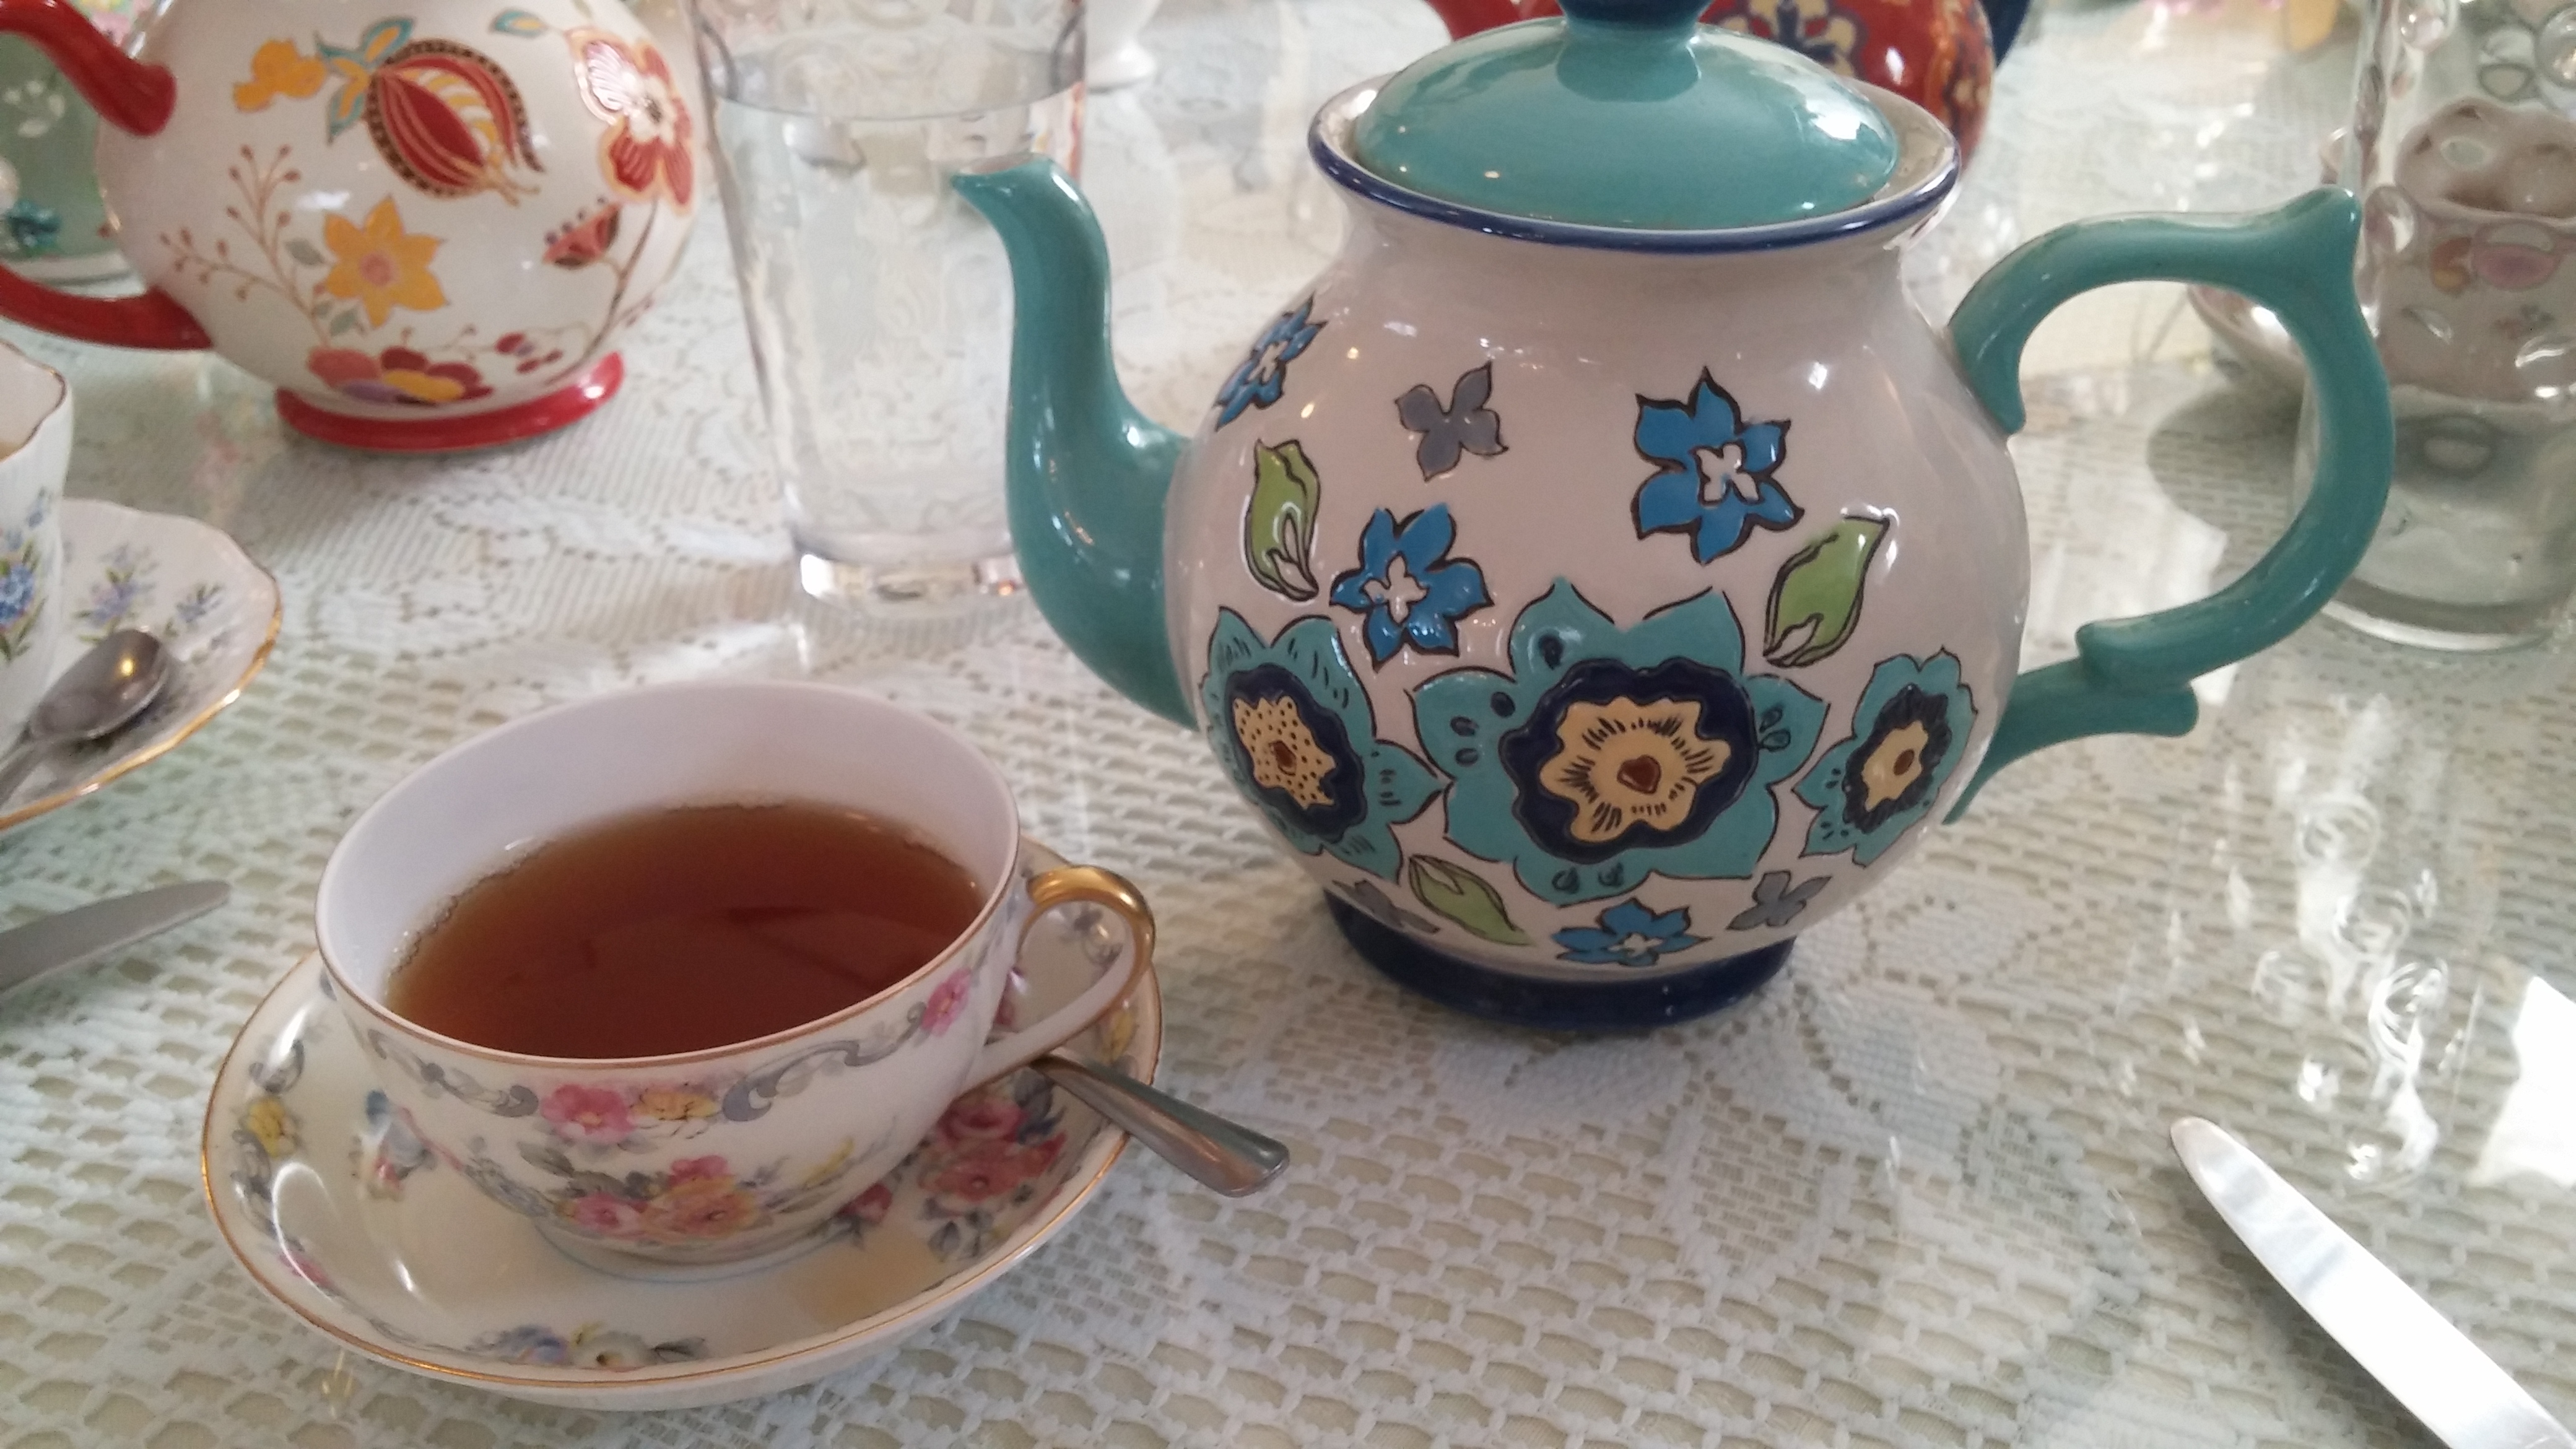 Tea cup filled with tea and a tea pot